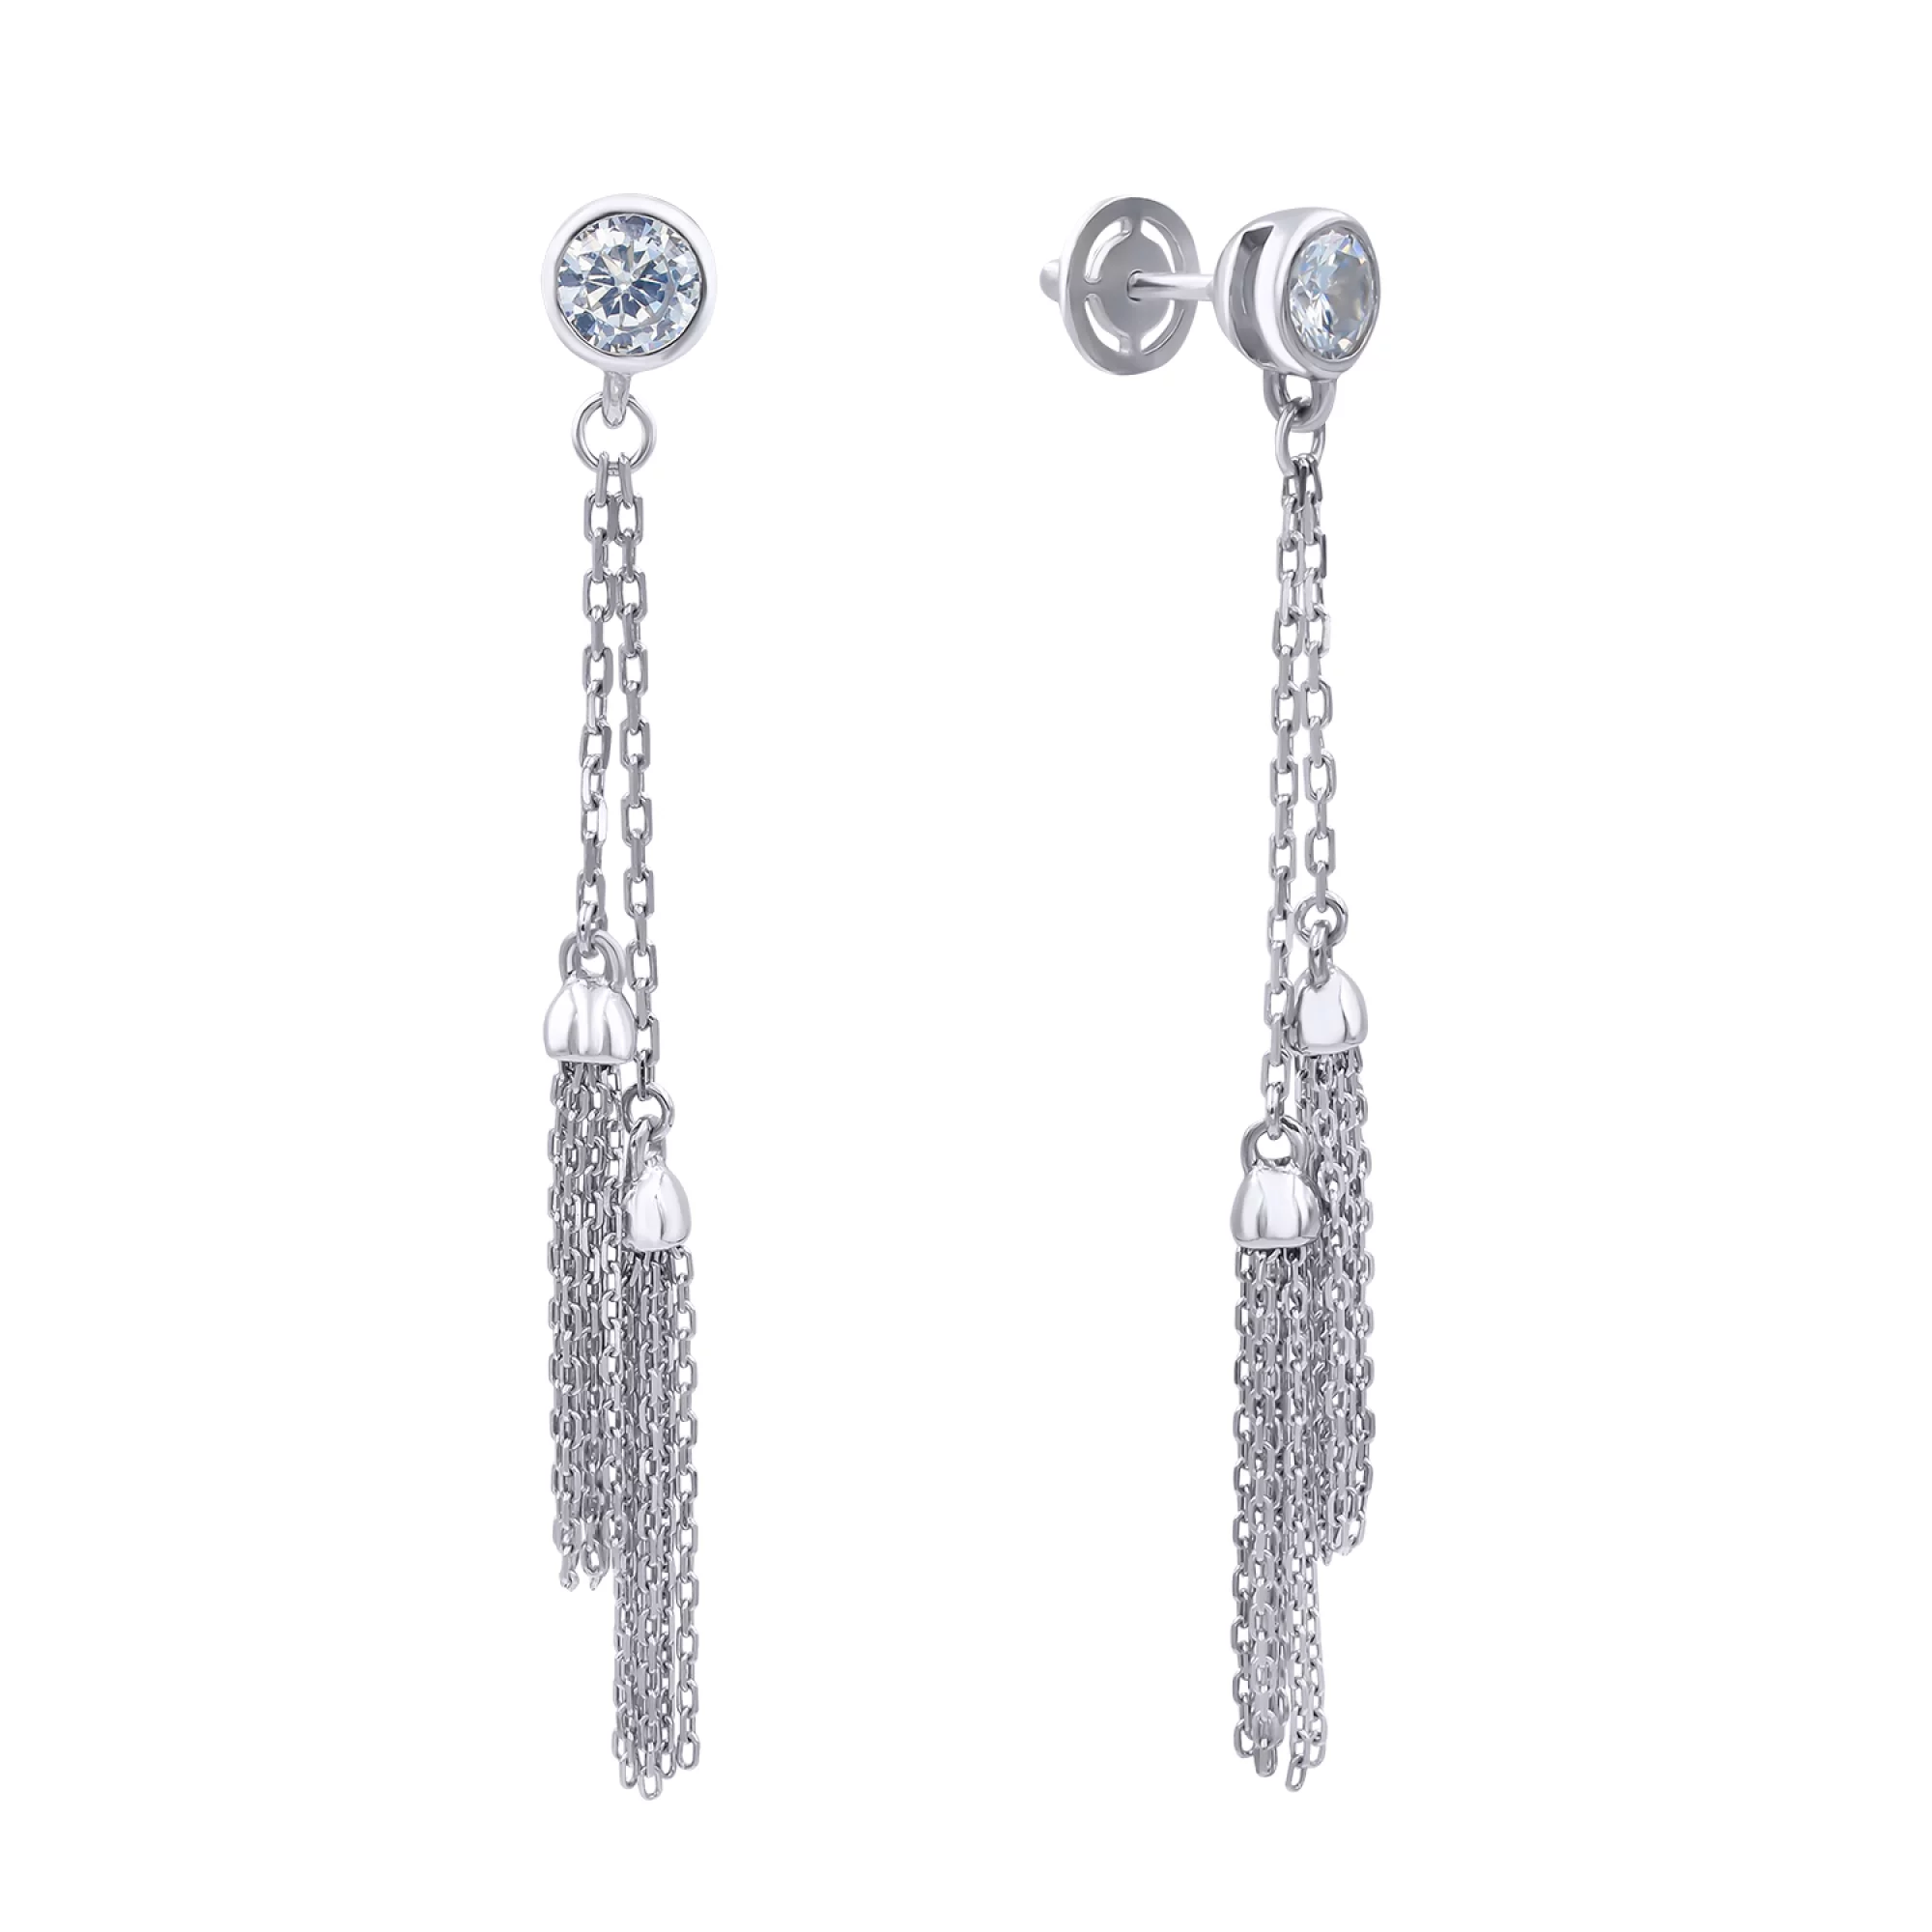 Срібні сережки-гвоздики з цирконієм - 407880 – зображення 1